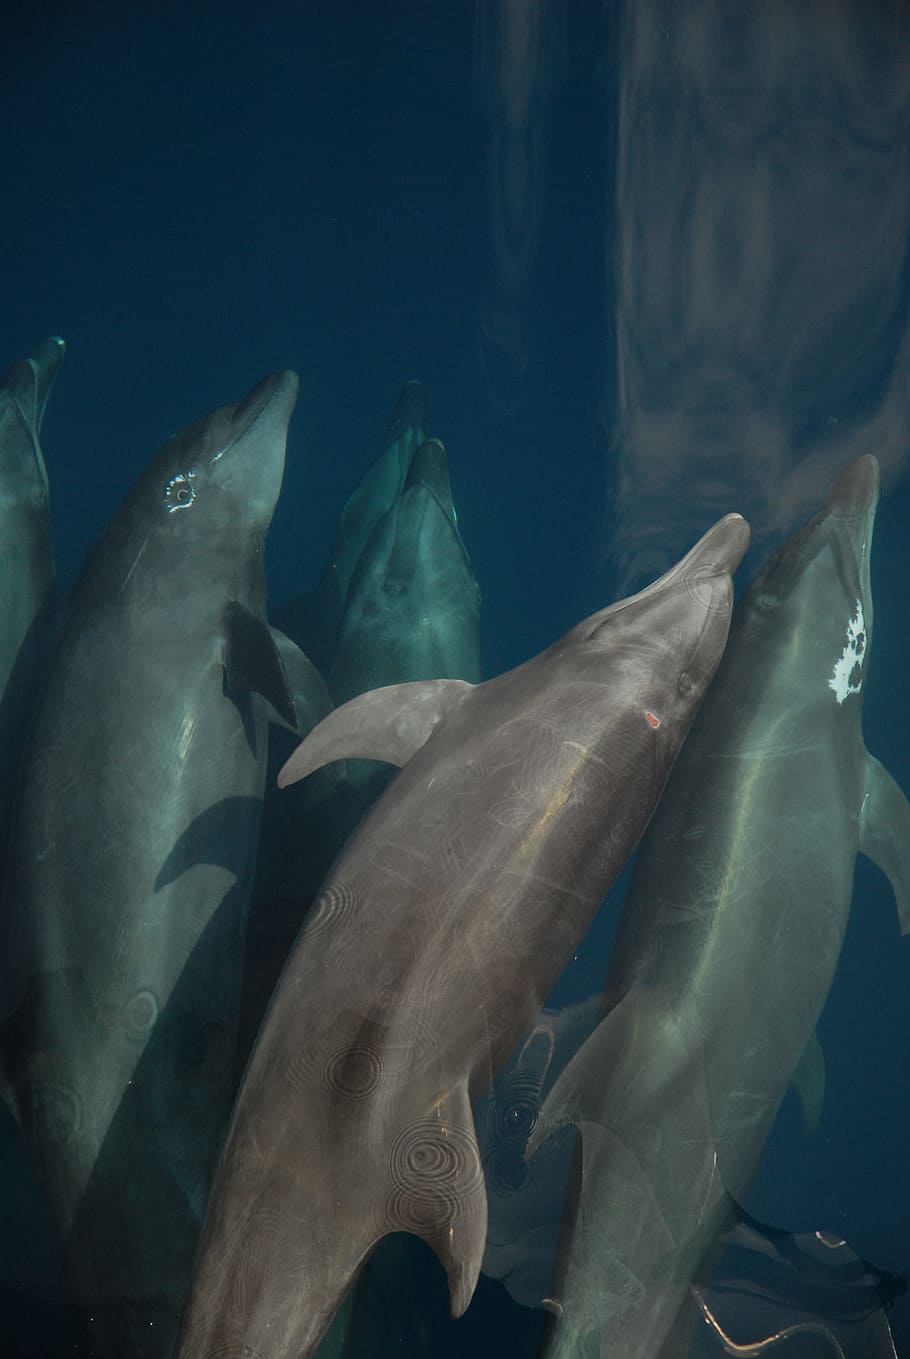 Bottlenose Dolphin, Sea, Marine Mammal, dolphins, ocean, hull of ship